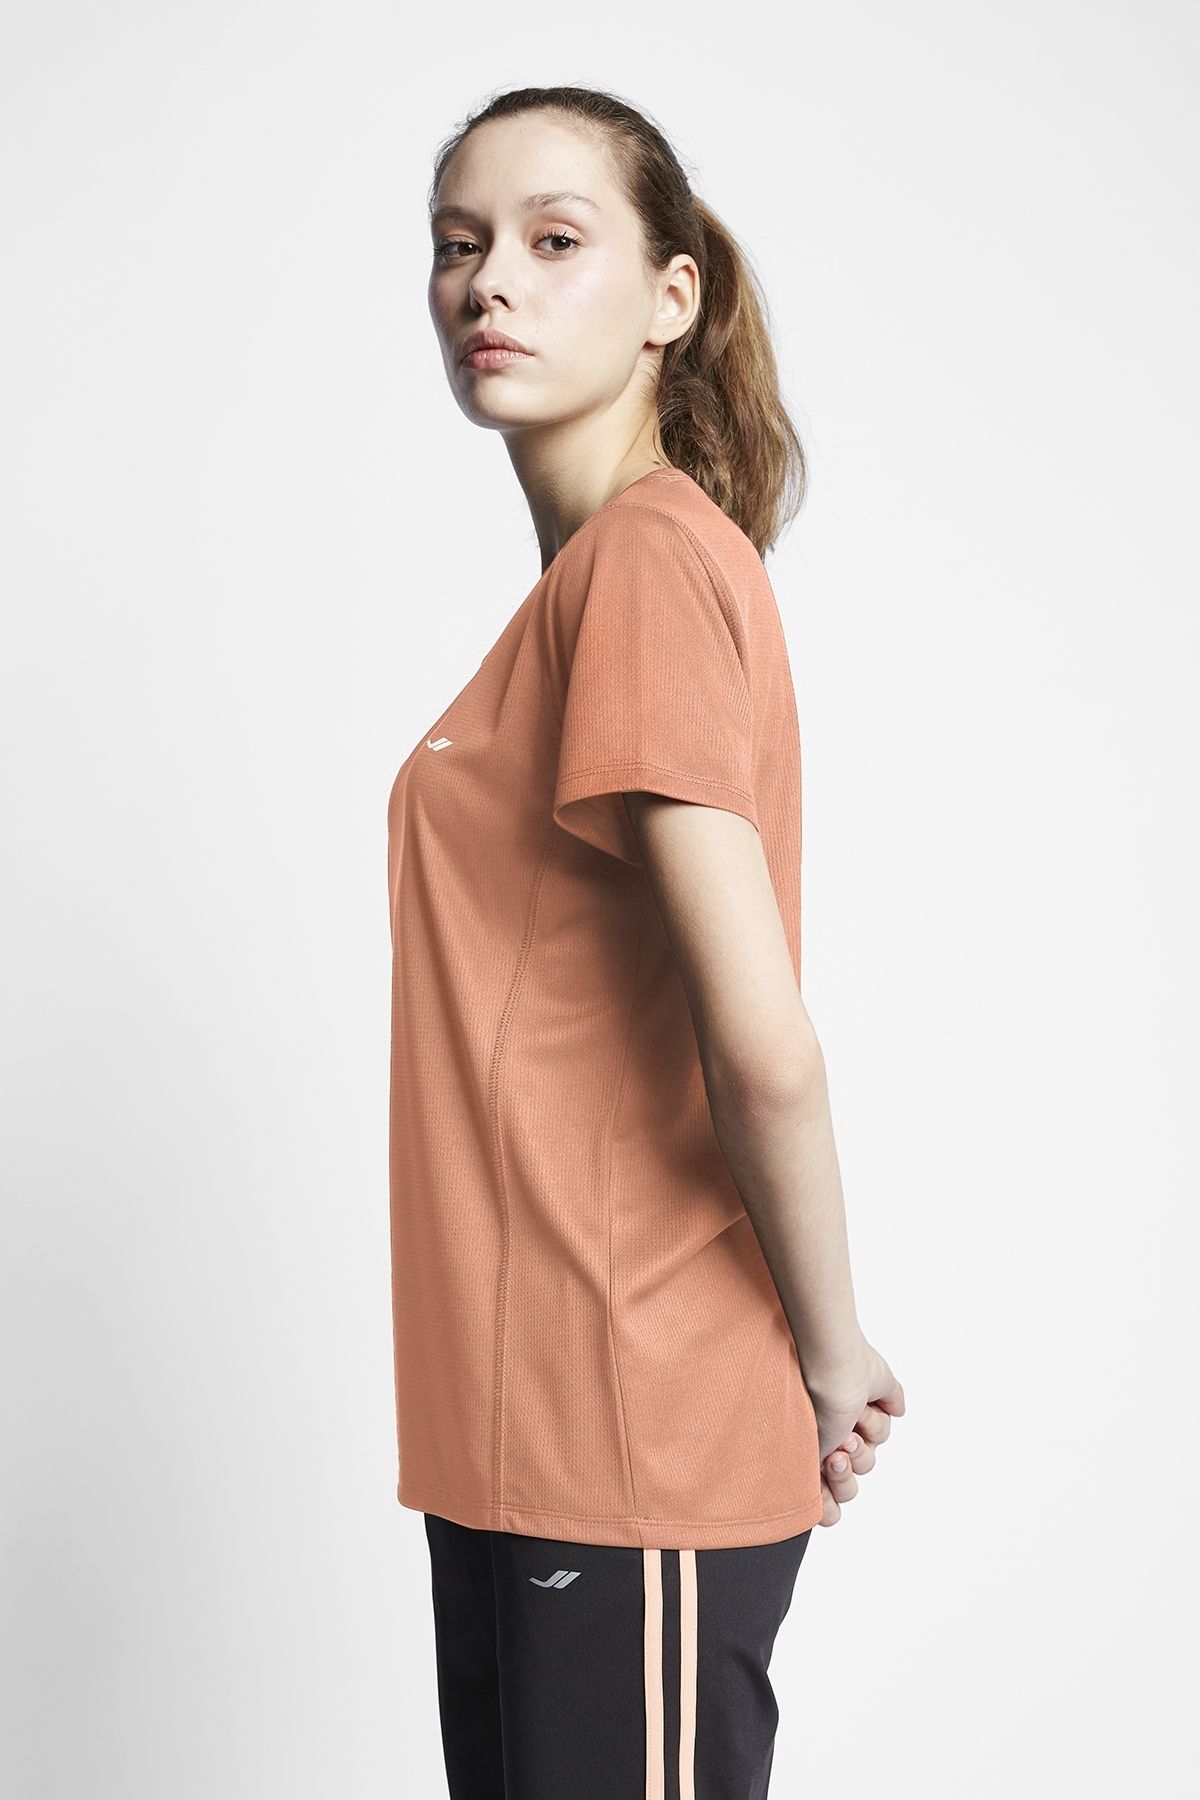 Lescon Kadın Kısa Kollu T-shirt 23s-2204-23b